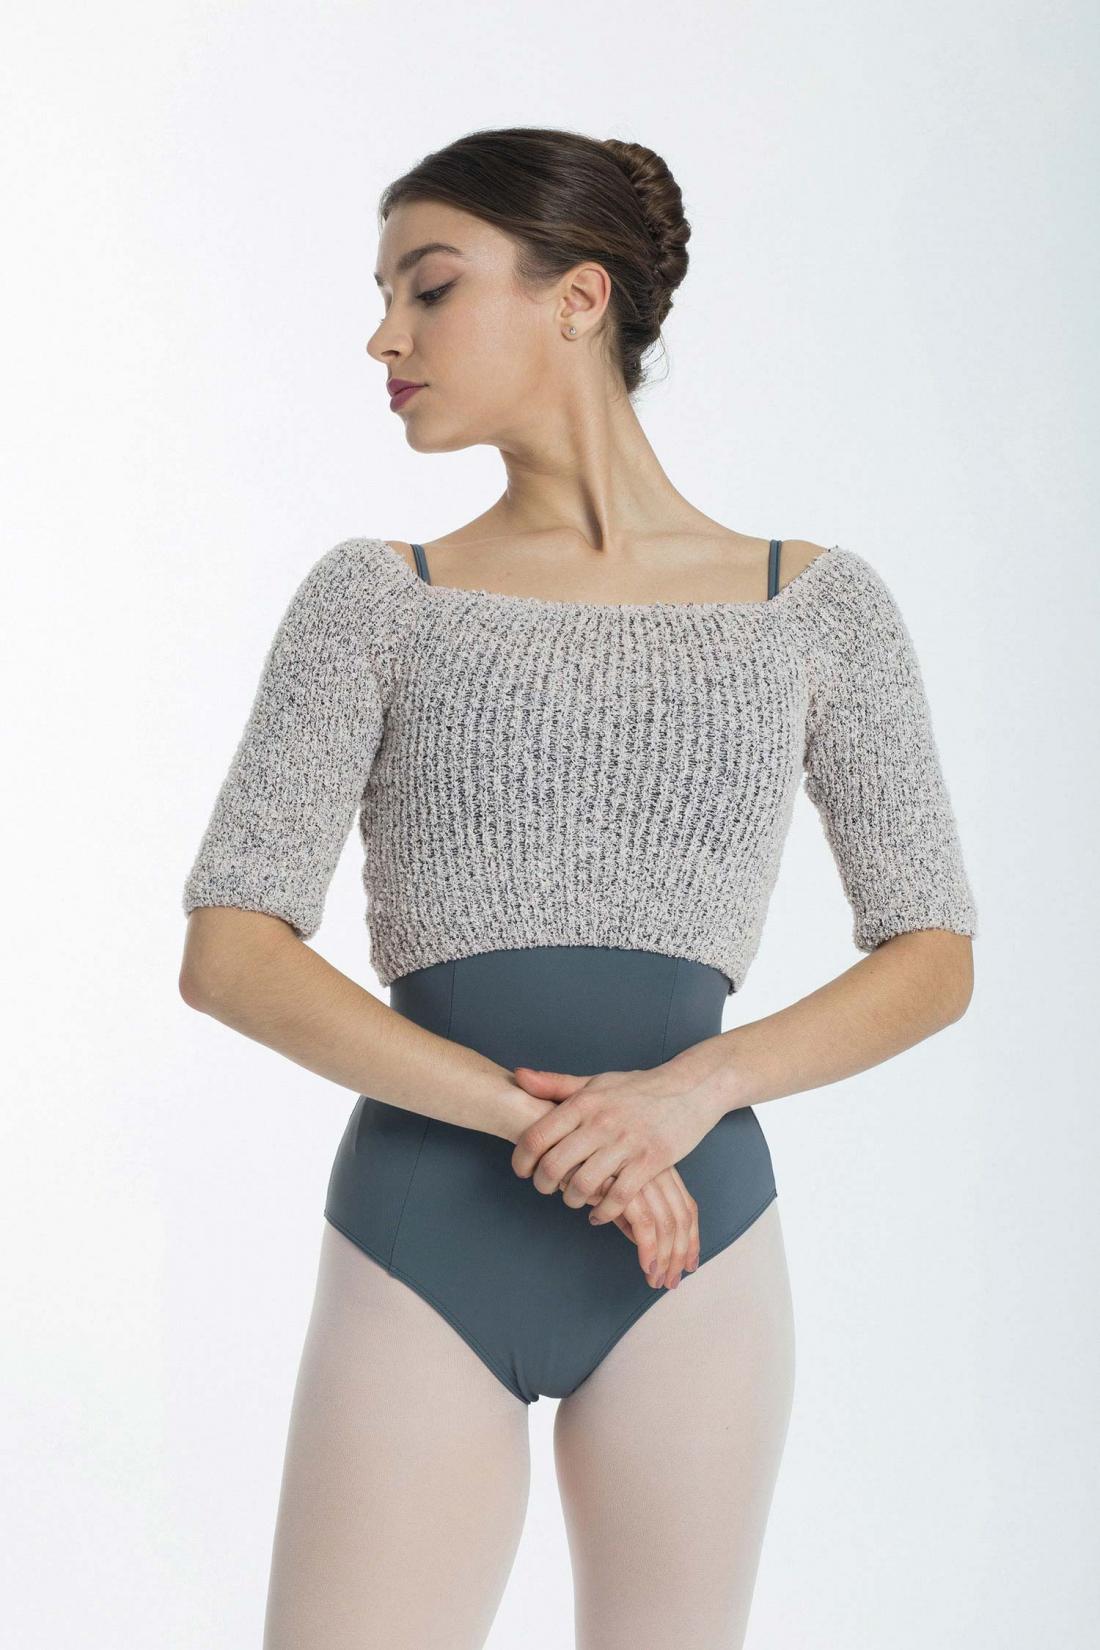 Warm up Intermezzo Crop Top dance ballet sweater